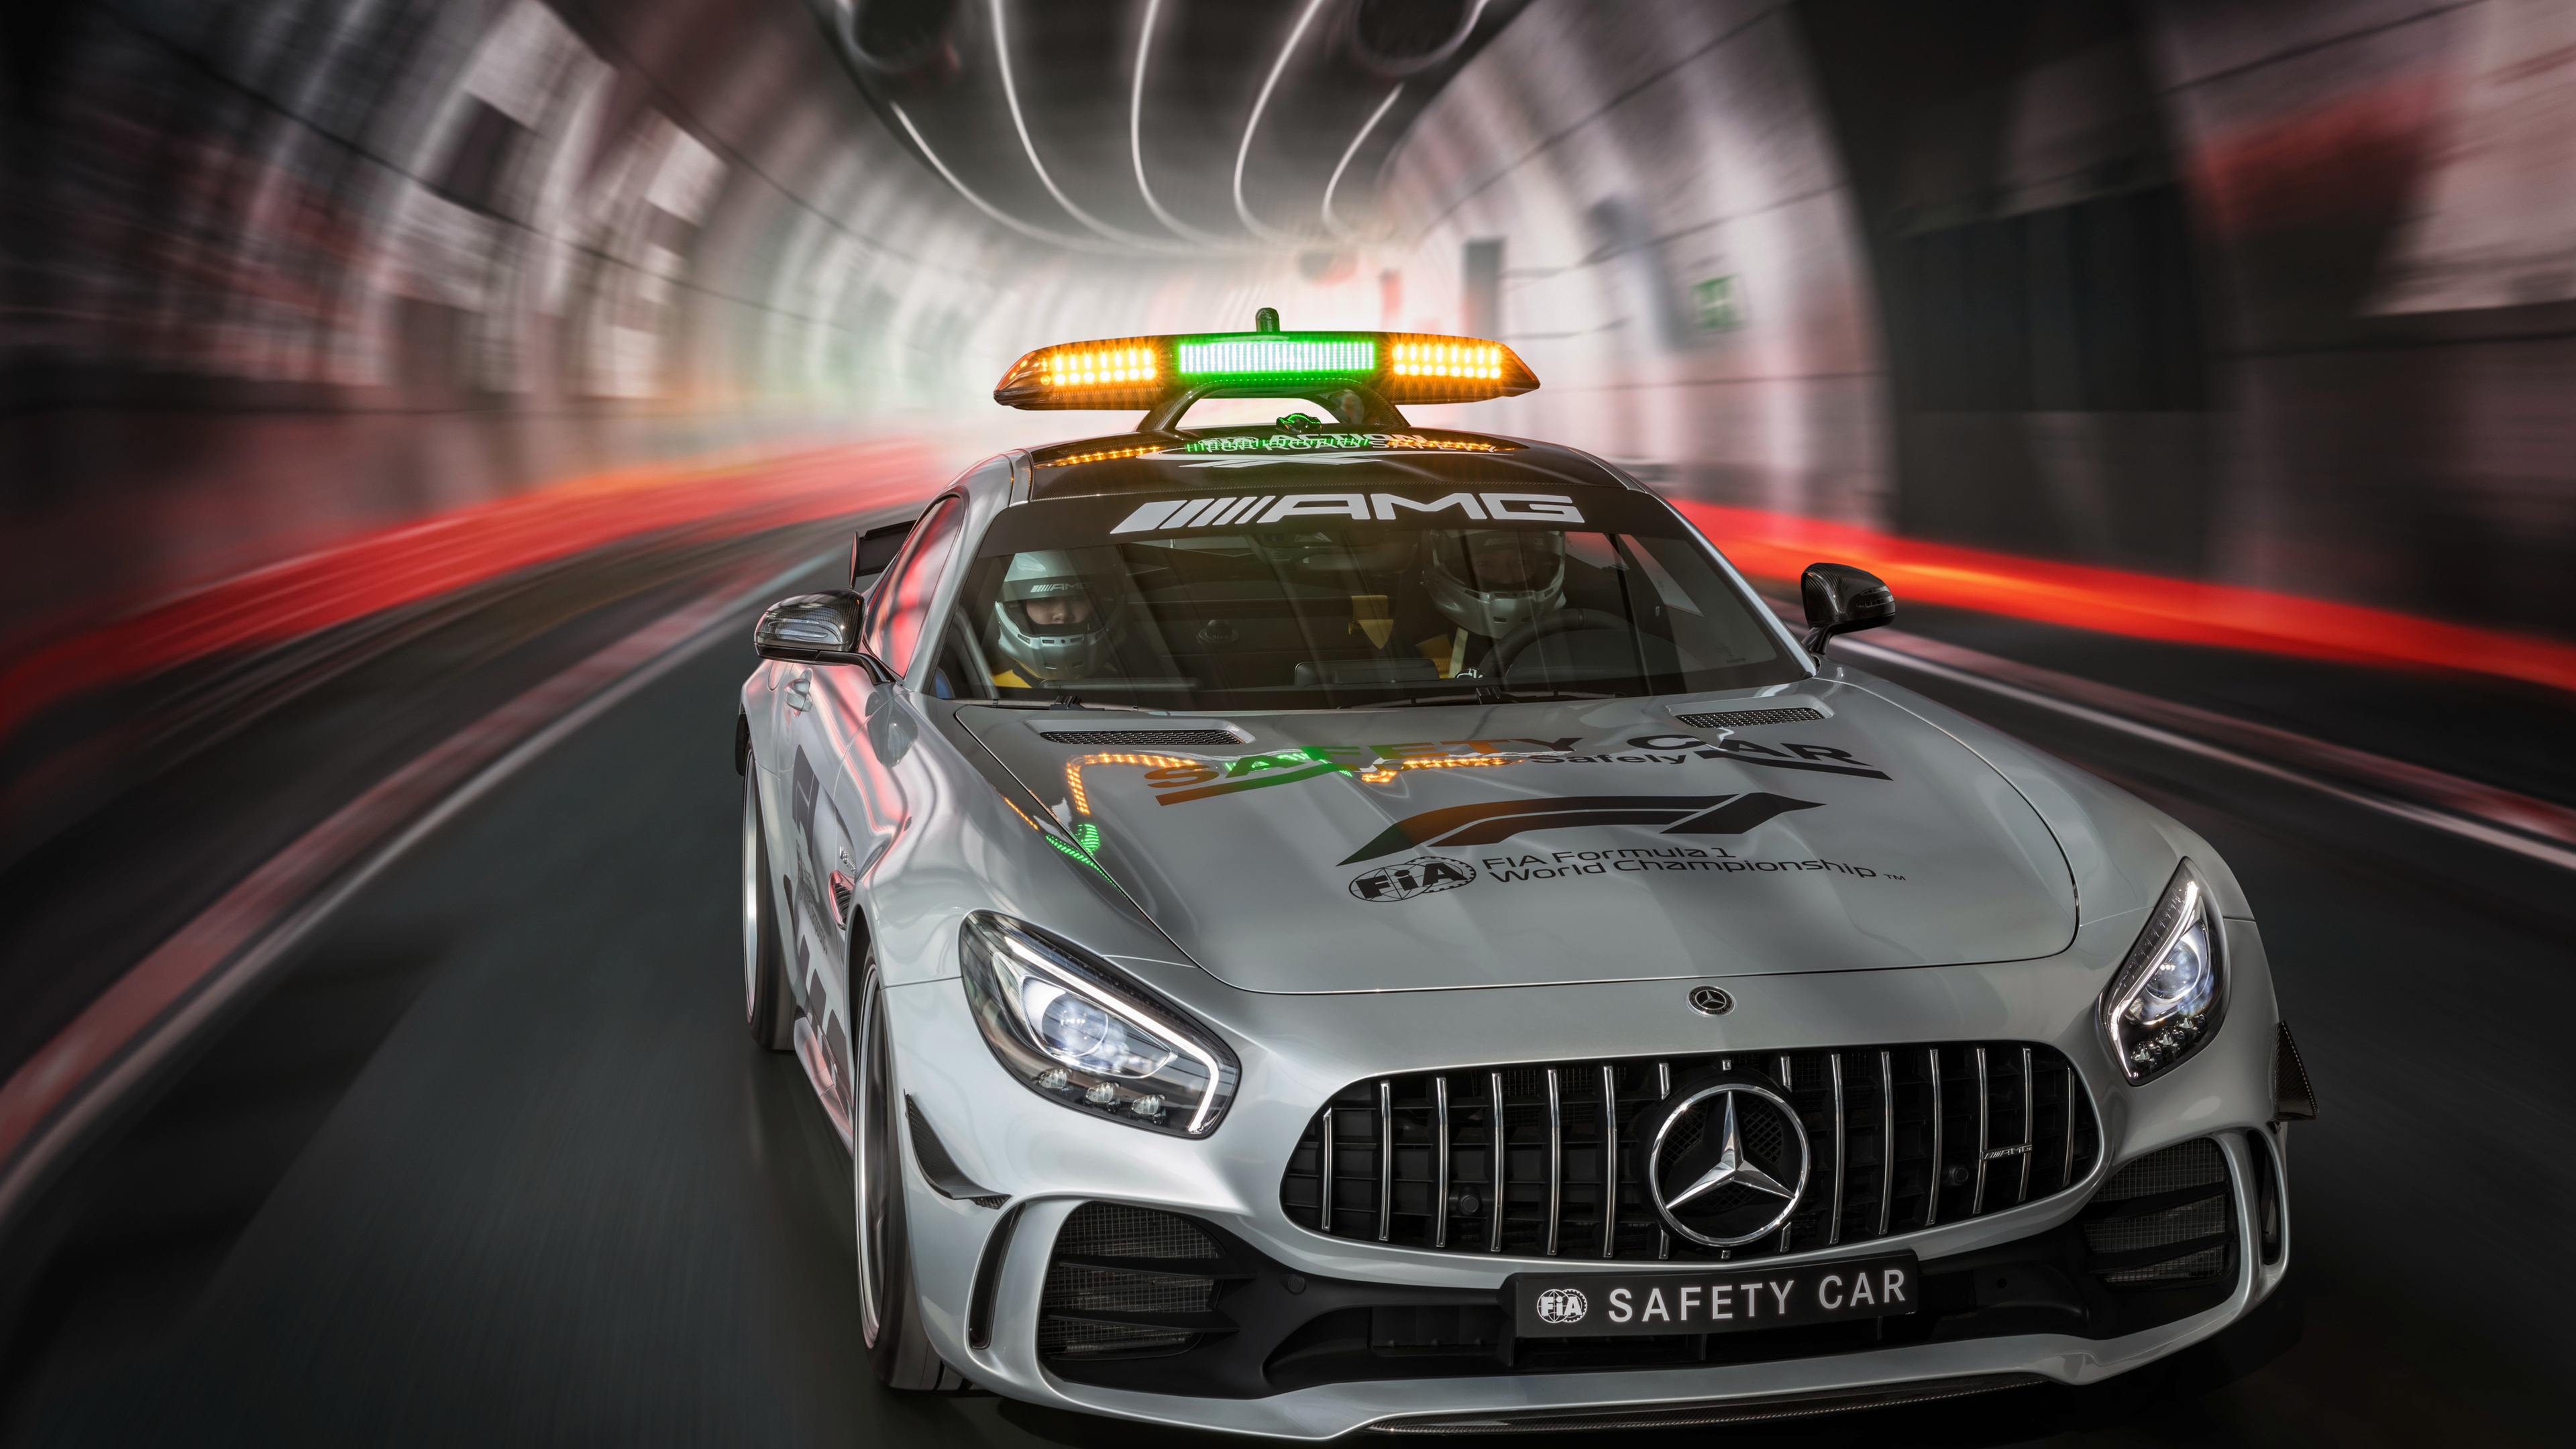 2018 Mercedes Amg Gt R F1 Safety Car - F1 Safety Car Mercedes Amg Gt R - HD Wallpaper 